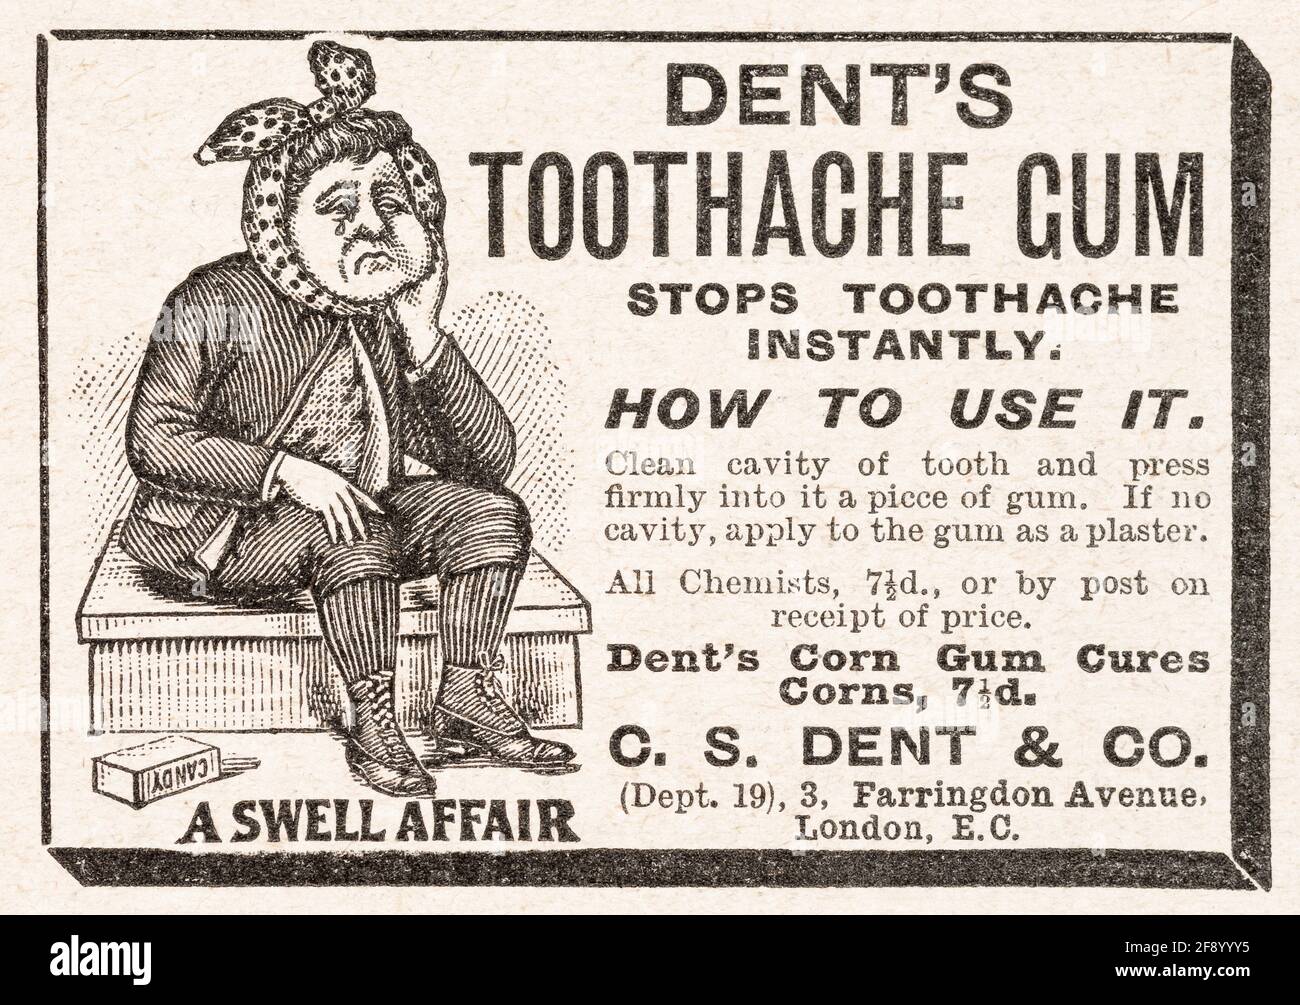 Alte viktorianische Zahnschmerzen Heilung Werbung von 1902 - Pre-Advertising Standards. Alte zahnärztliche Werbung, Geschichte der Werbung, glum Patient. Stockfoto